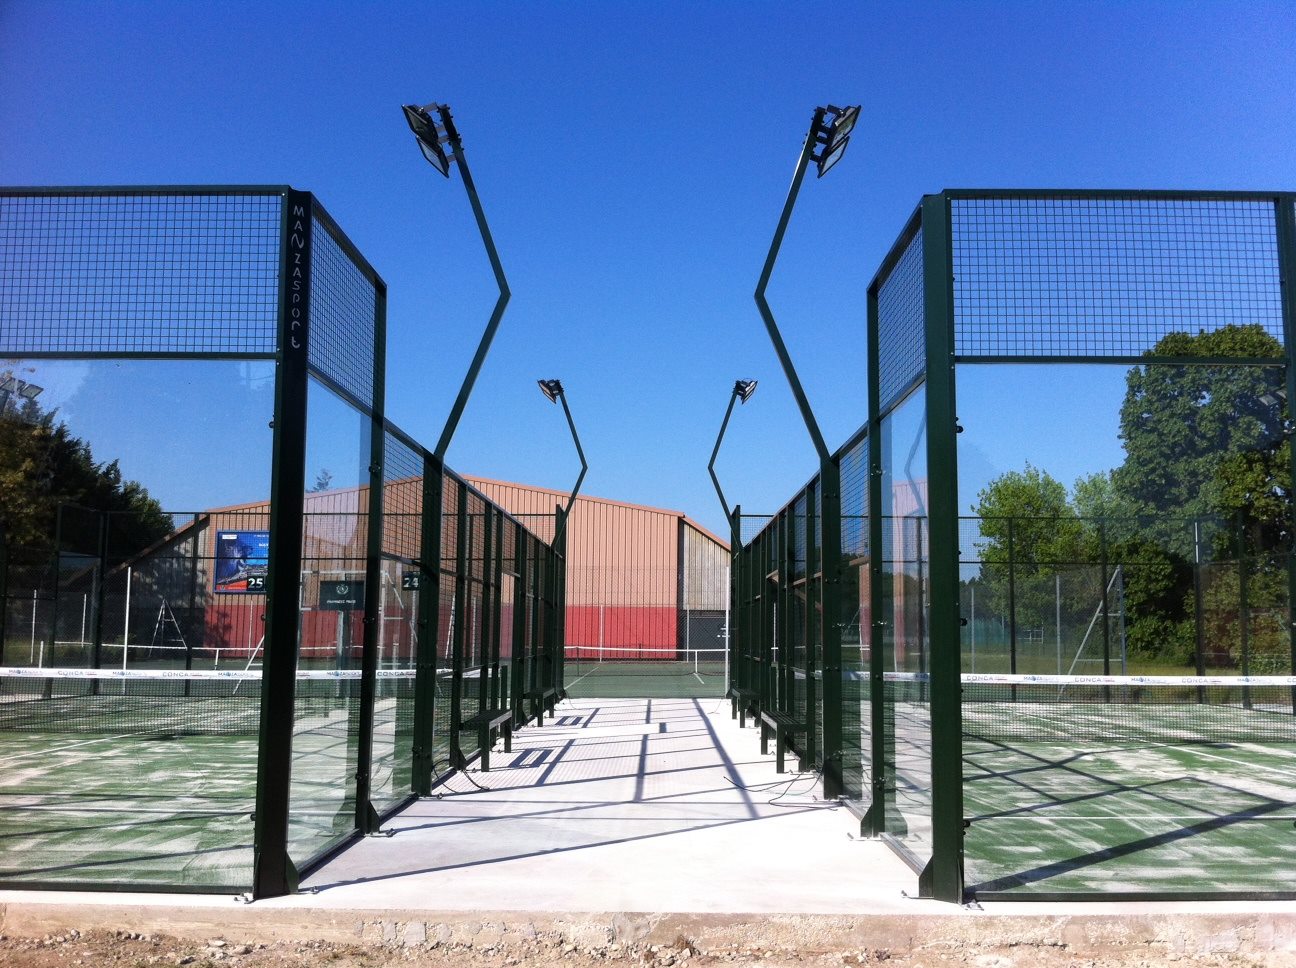 Tennisklubben de Lyon tilbyder 2 padlebaner